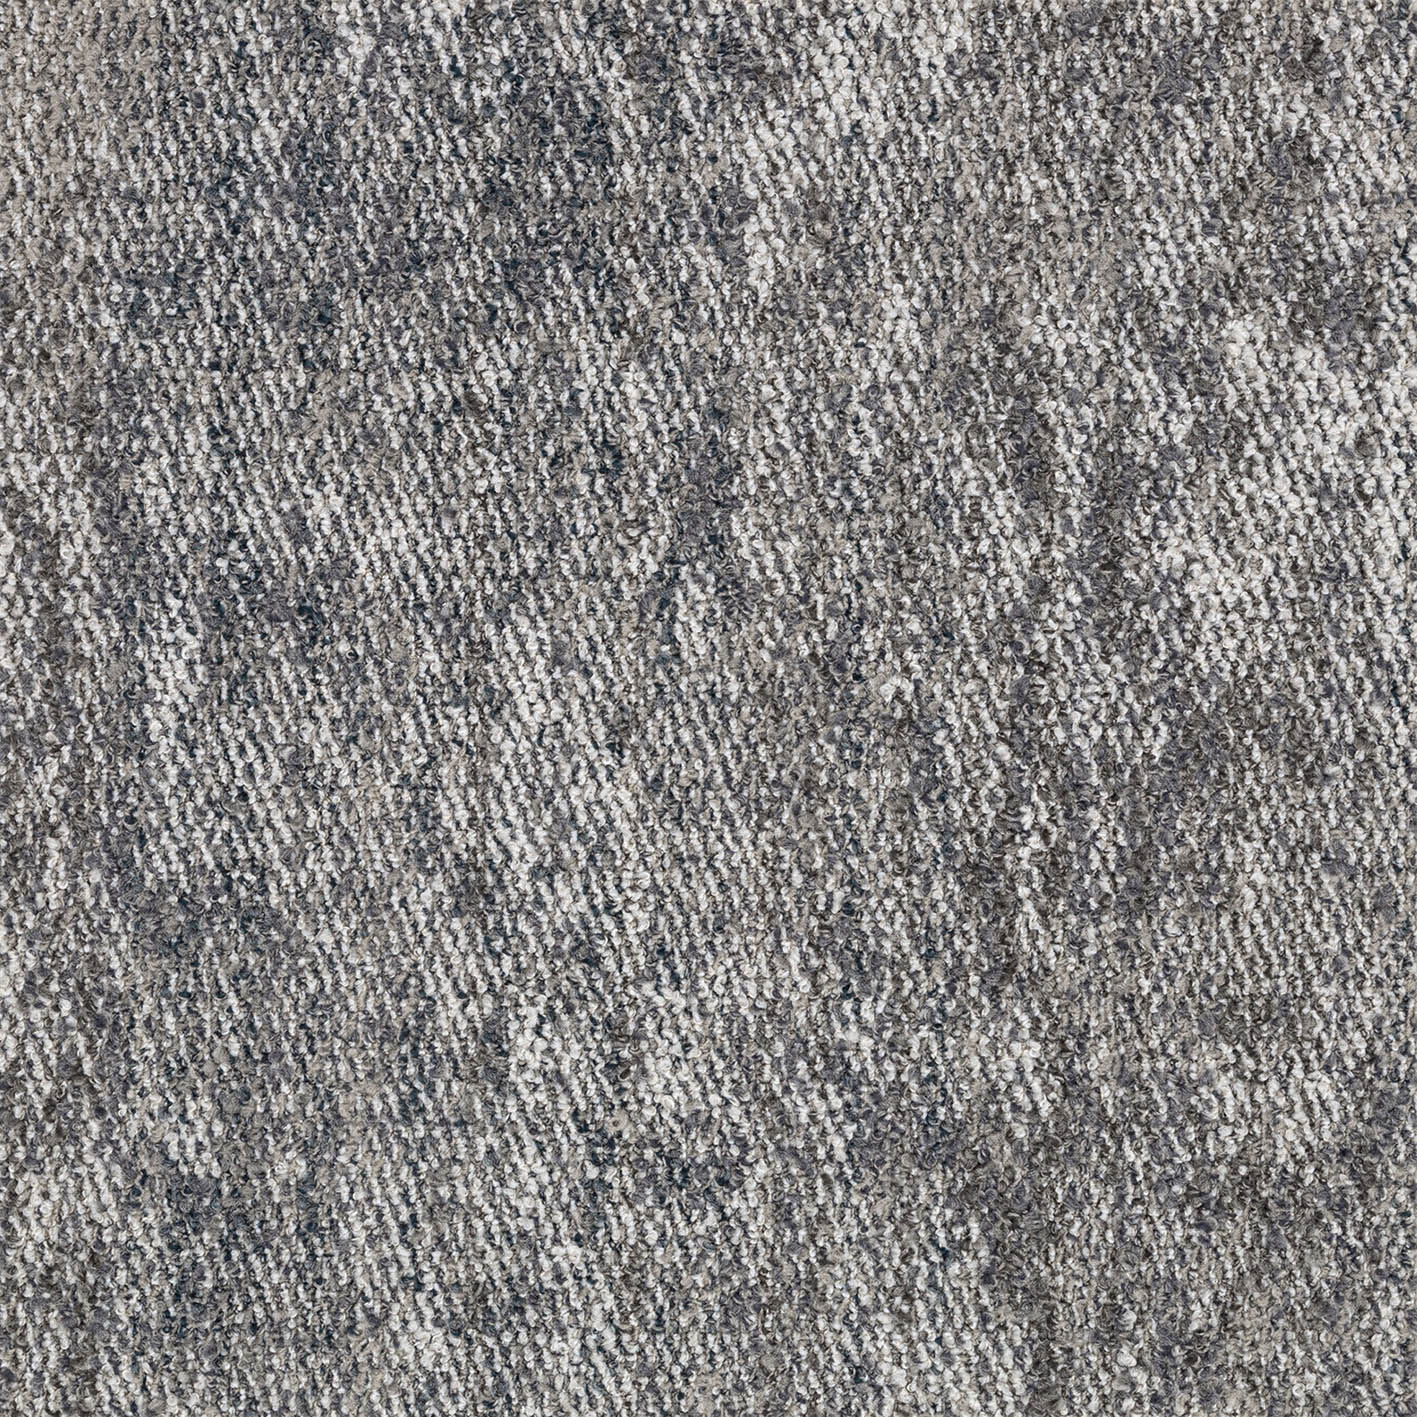 AB260-1 川島織物セルコン タイルカーペット モードスタイル リスボンプリーツ 川島織物セルコン タイルカーペット